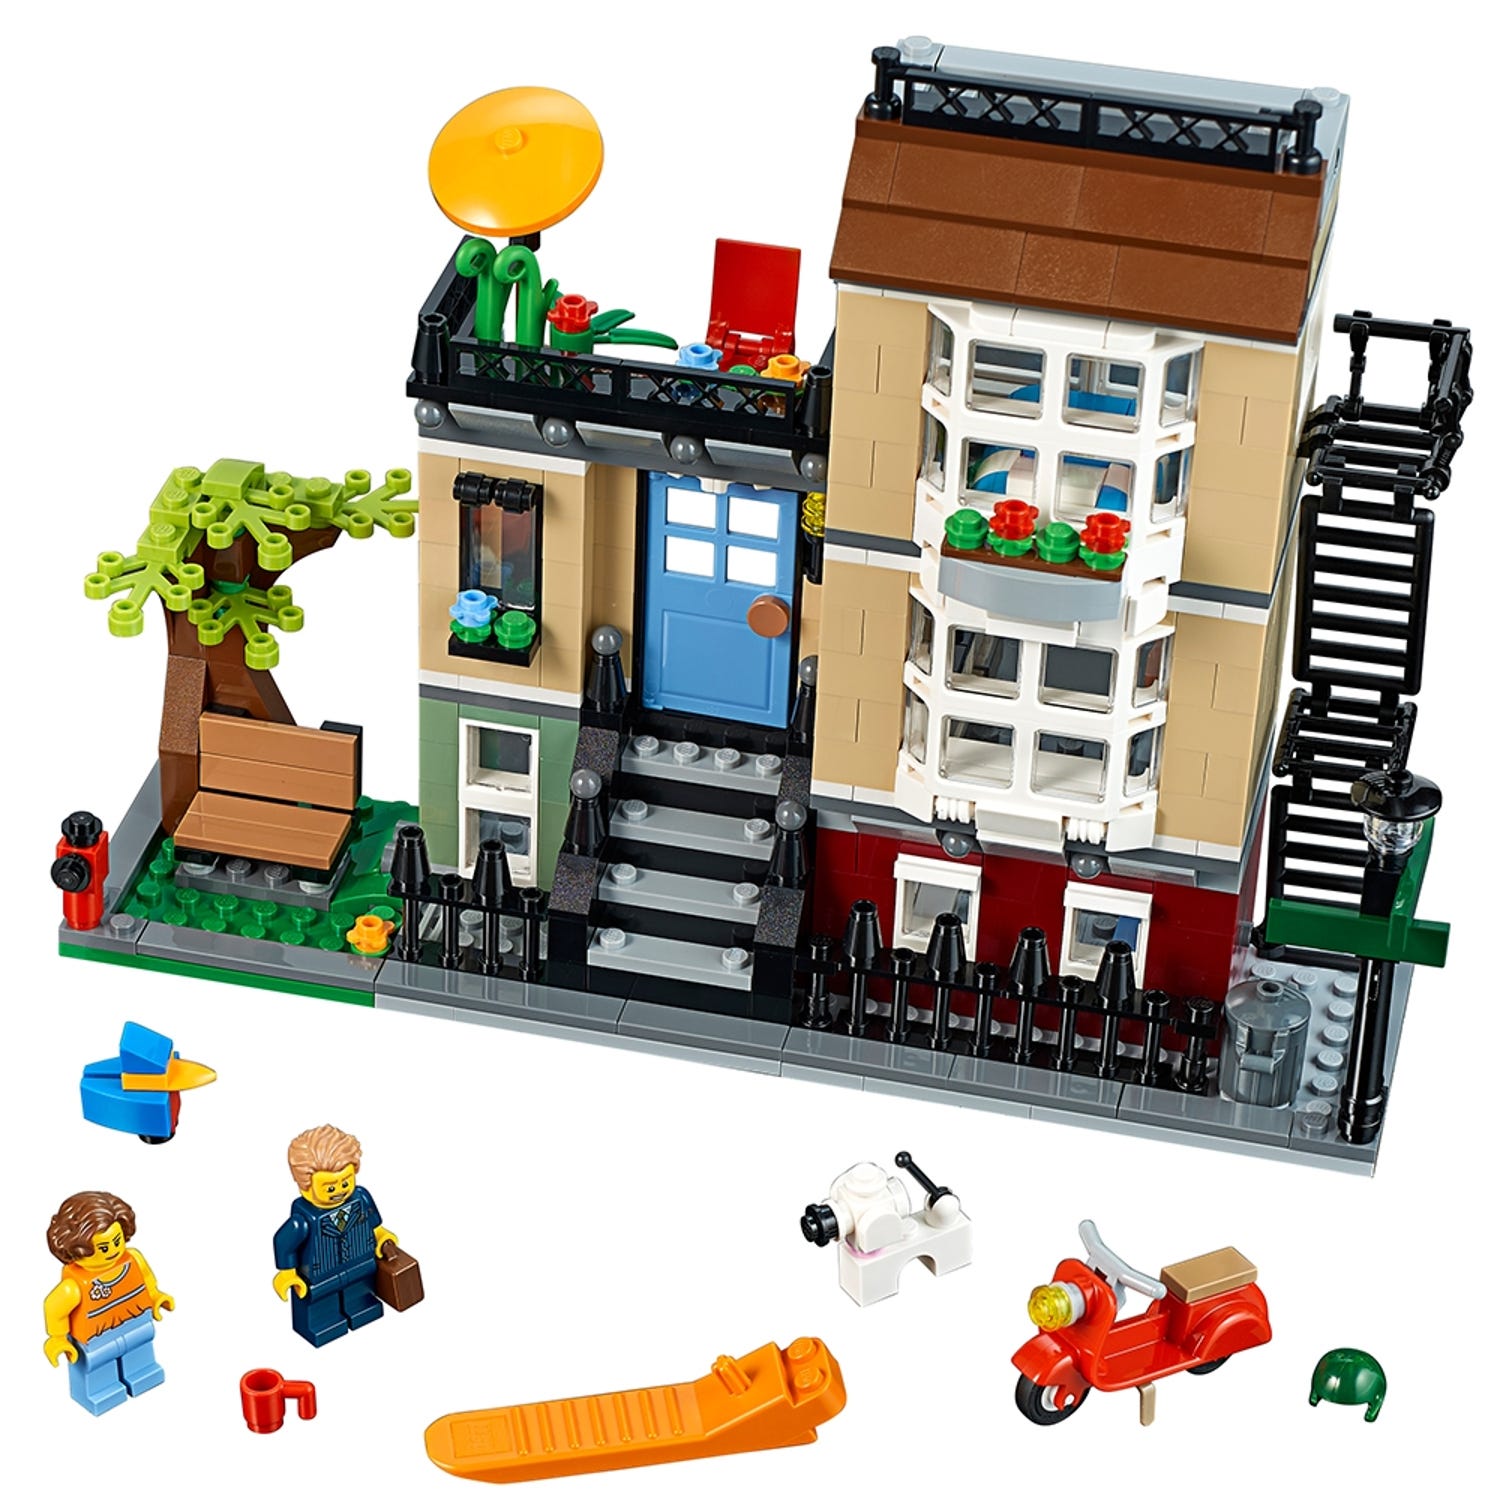 3 Années De Garçon De Construction De Maison De Lego Image stock - Image du  mains, pratiquez: 91261561